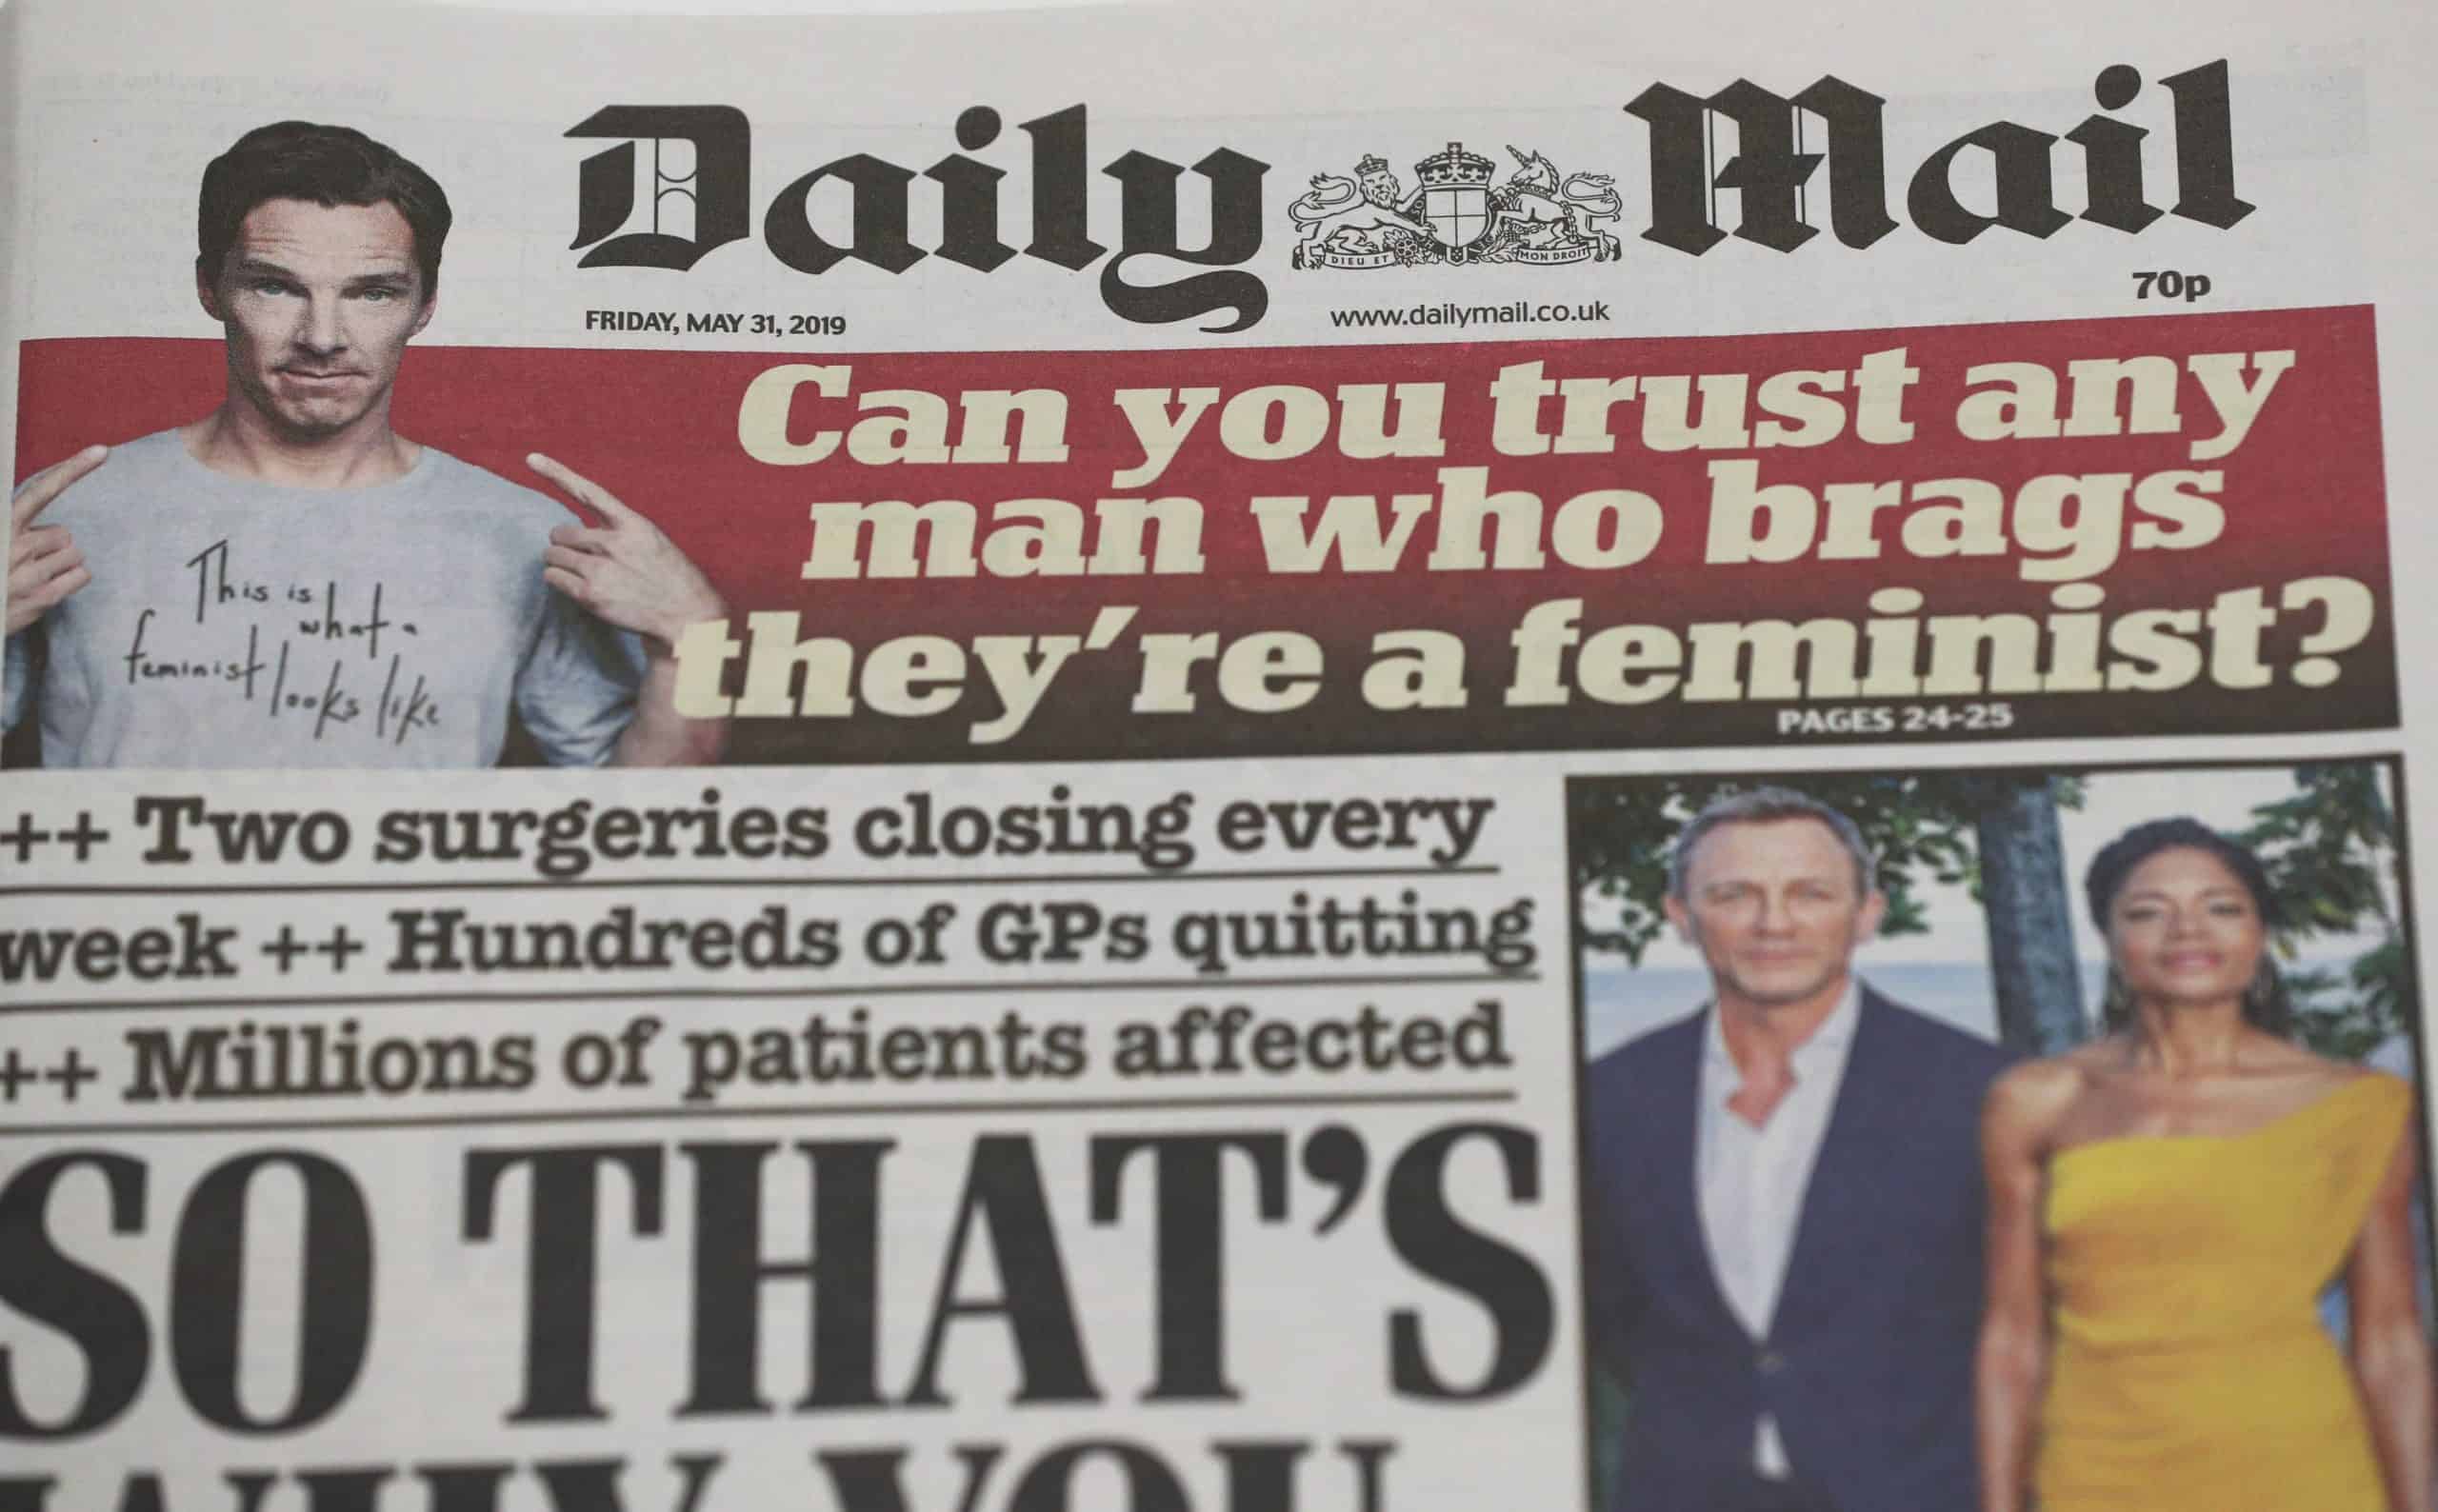 Daily Mail owner looks at possible job cuts as top execs soak up £33m bonus pot